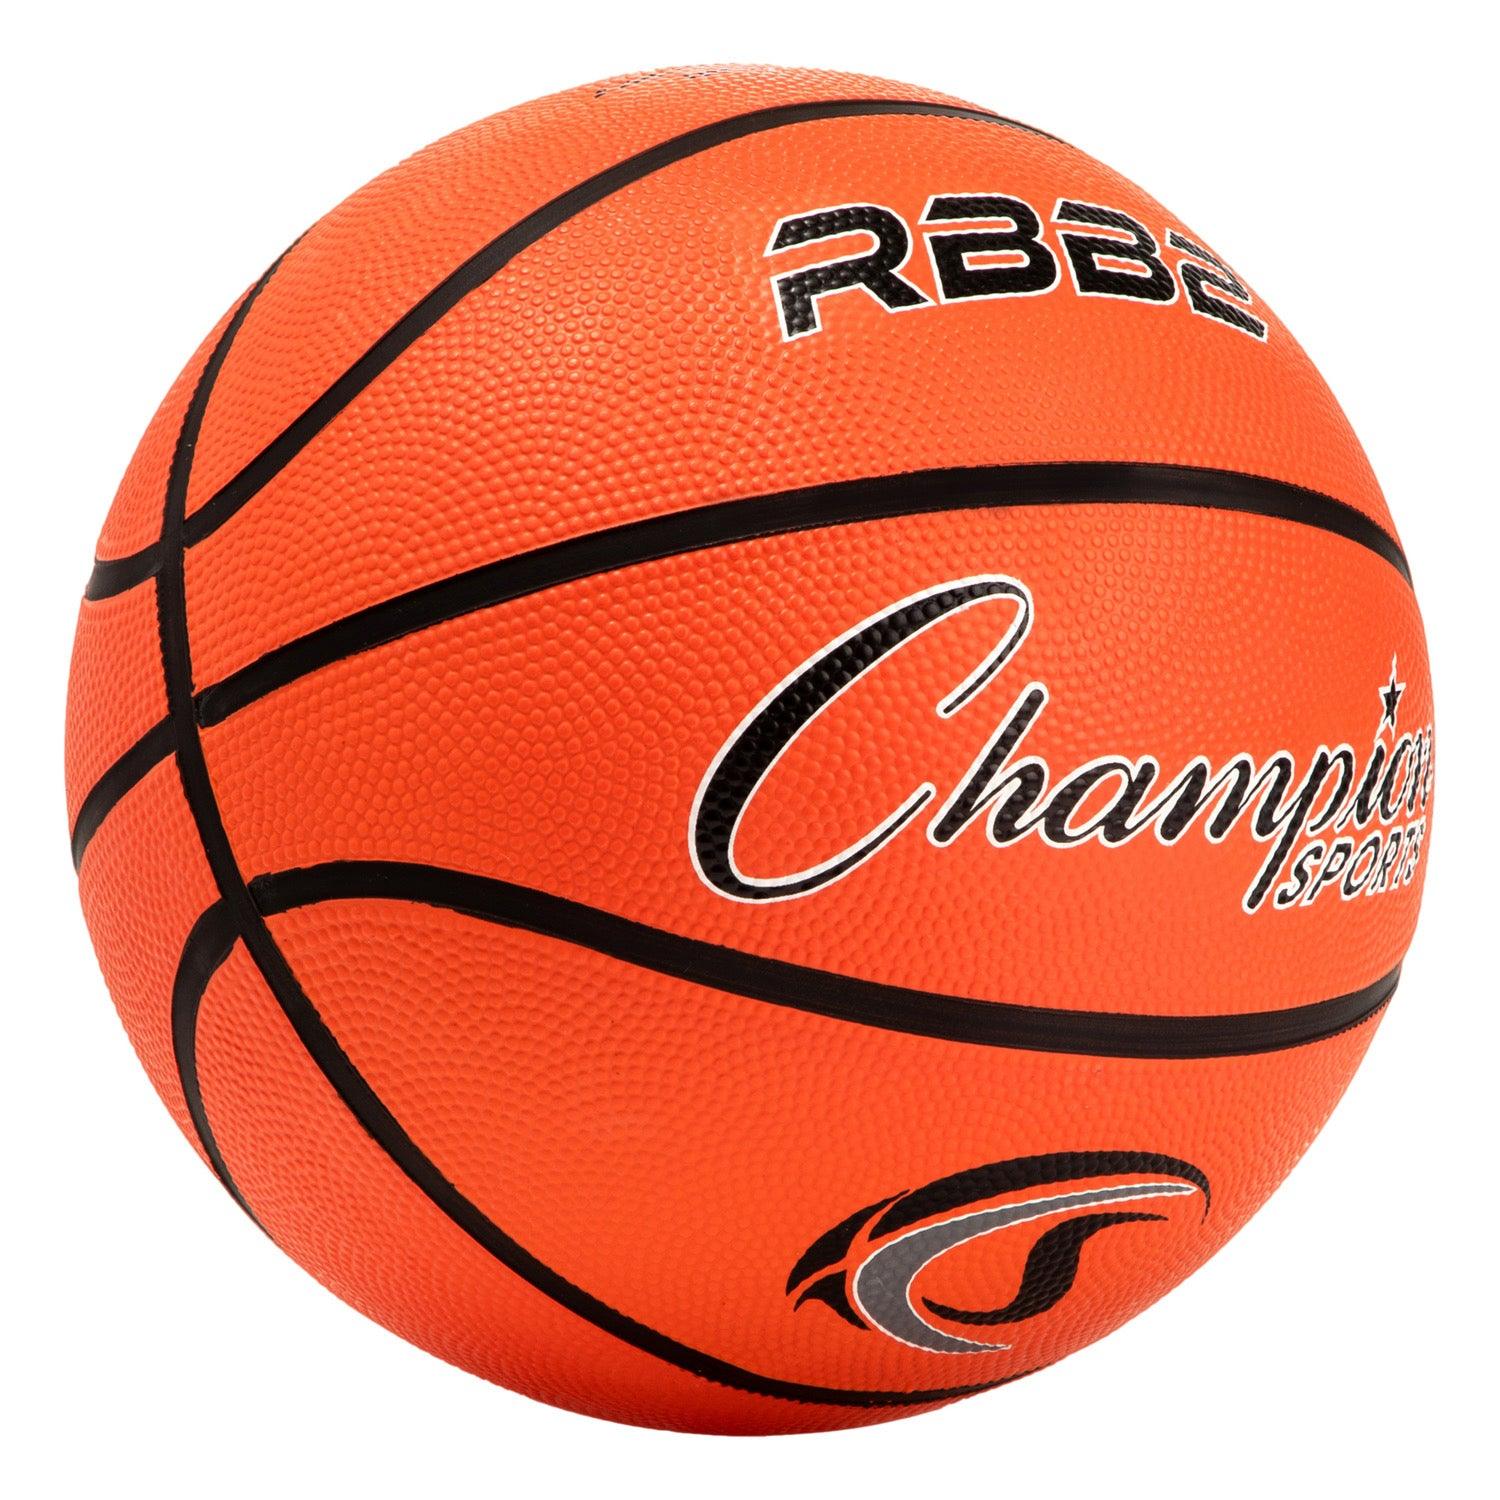 Junior Rubber Basketball, Orange, Pack of 3 - Loomini